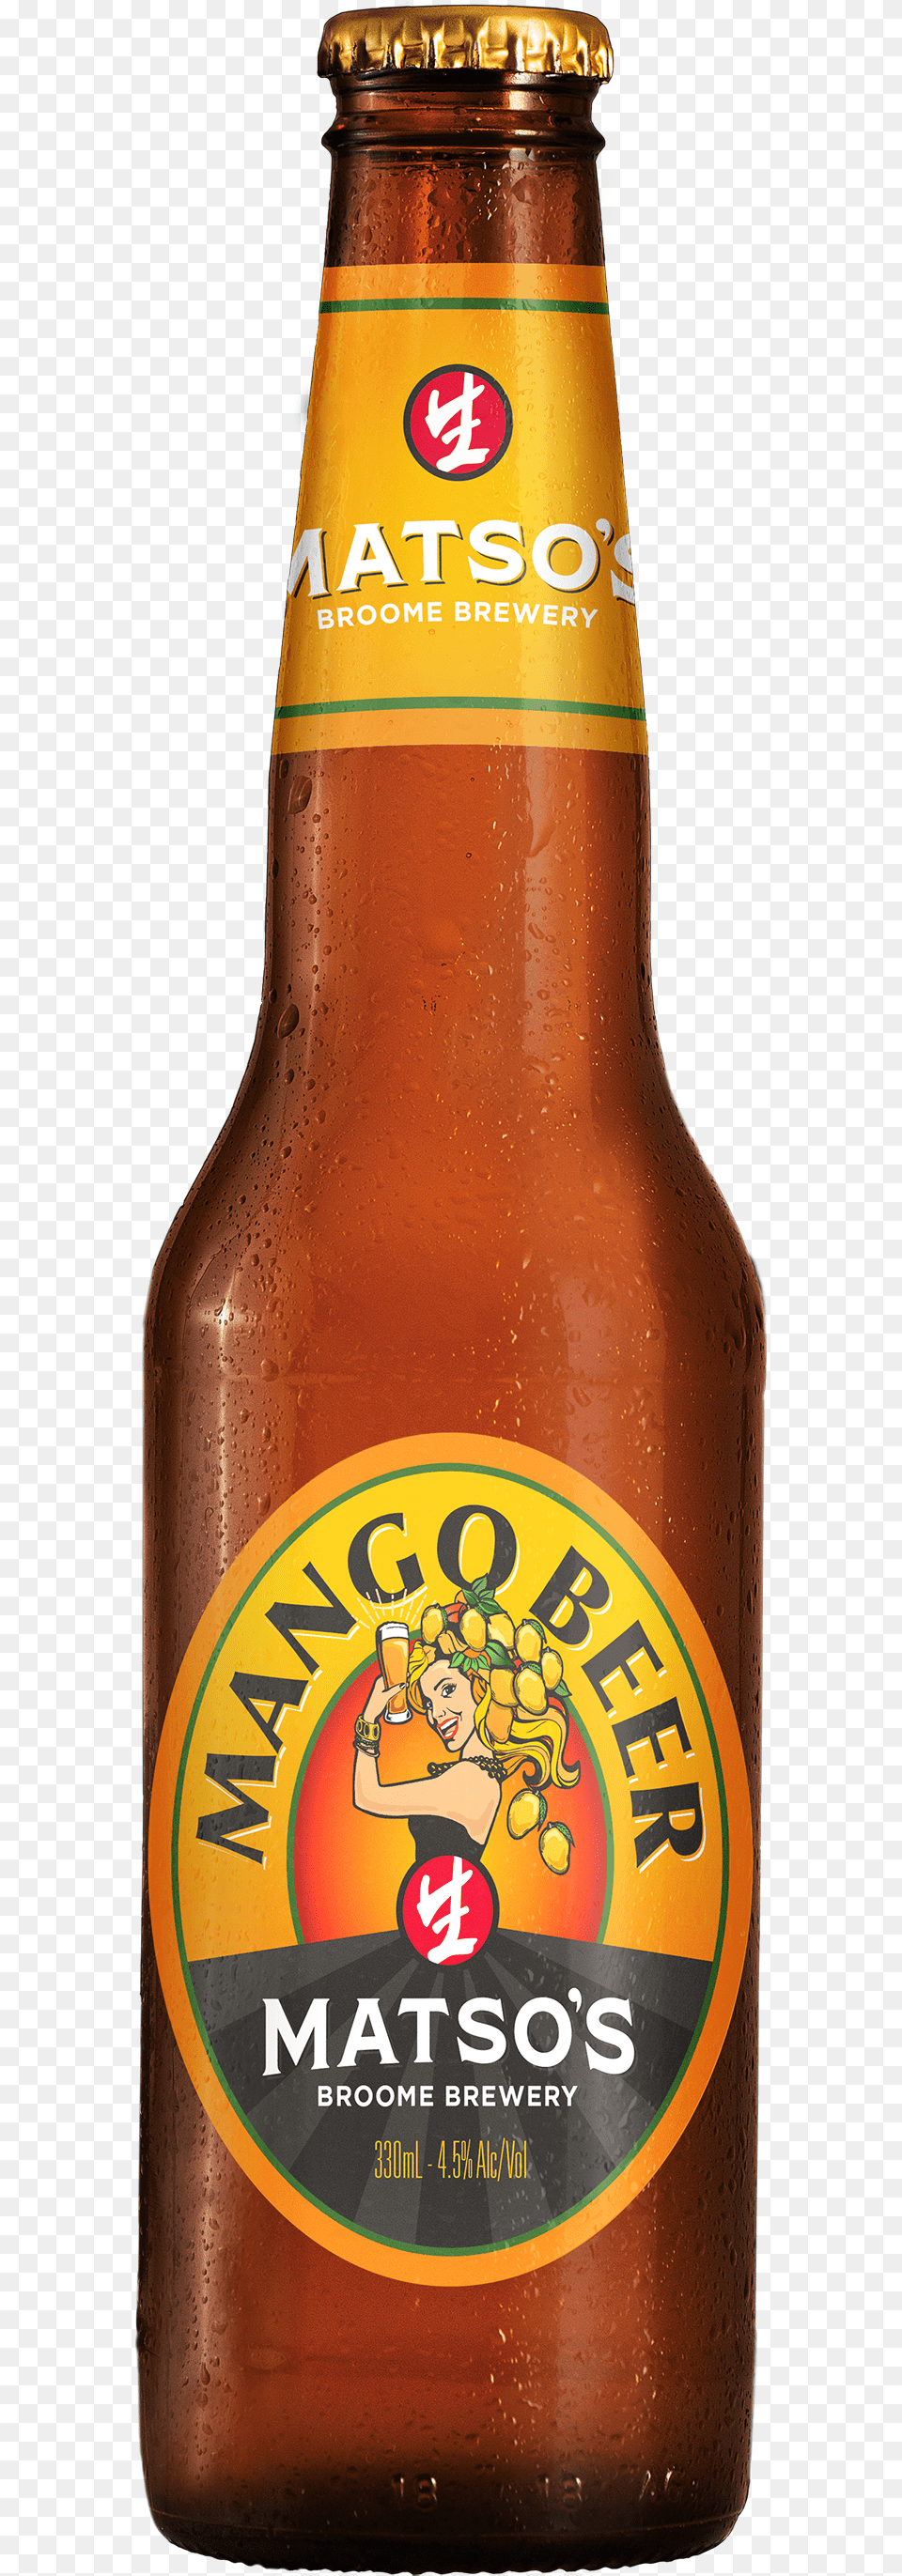 Mango Beer Beer Bottle, Alcohol, Beer Bottle, Beverage, Liquor Png Image